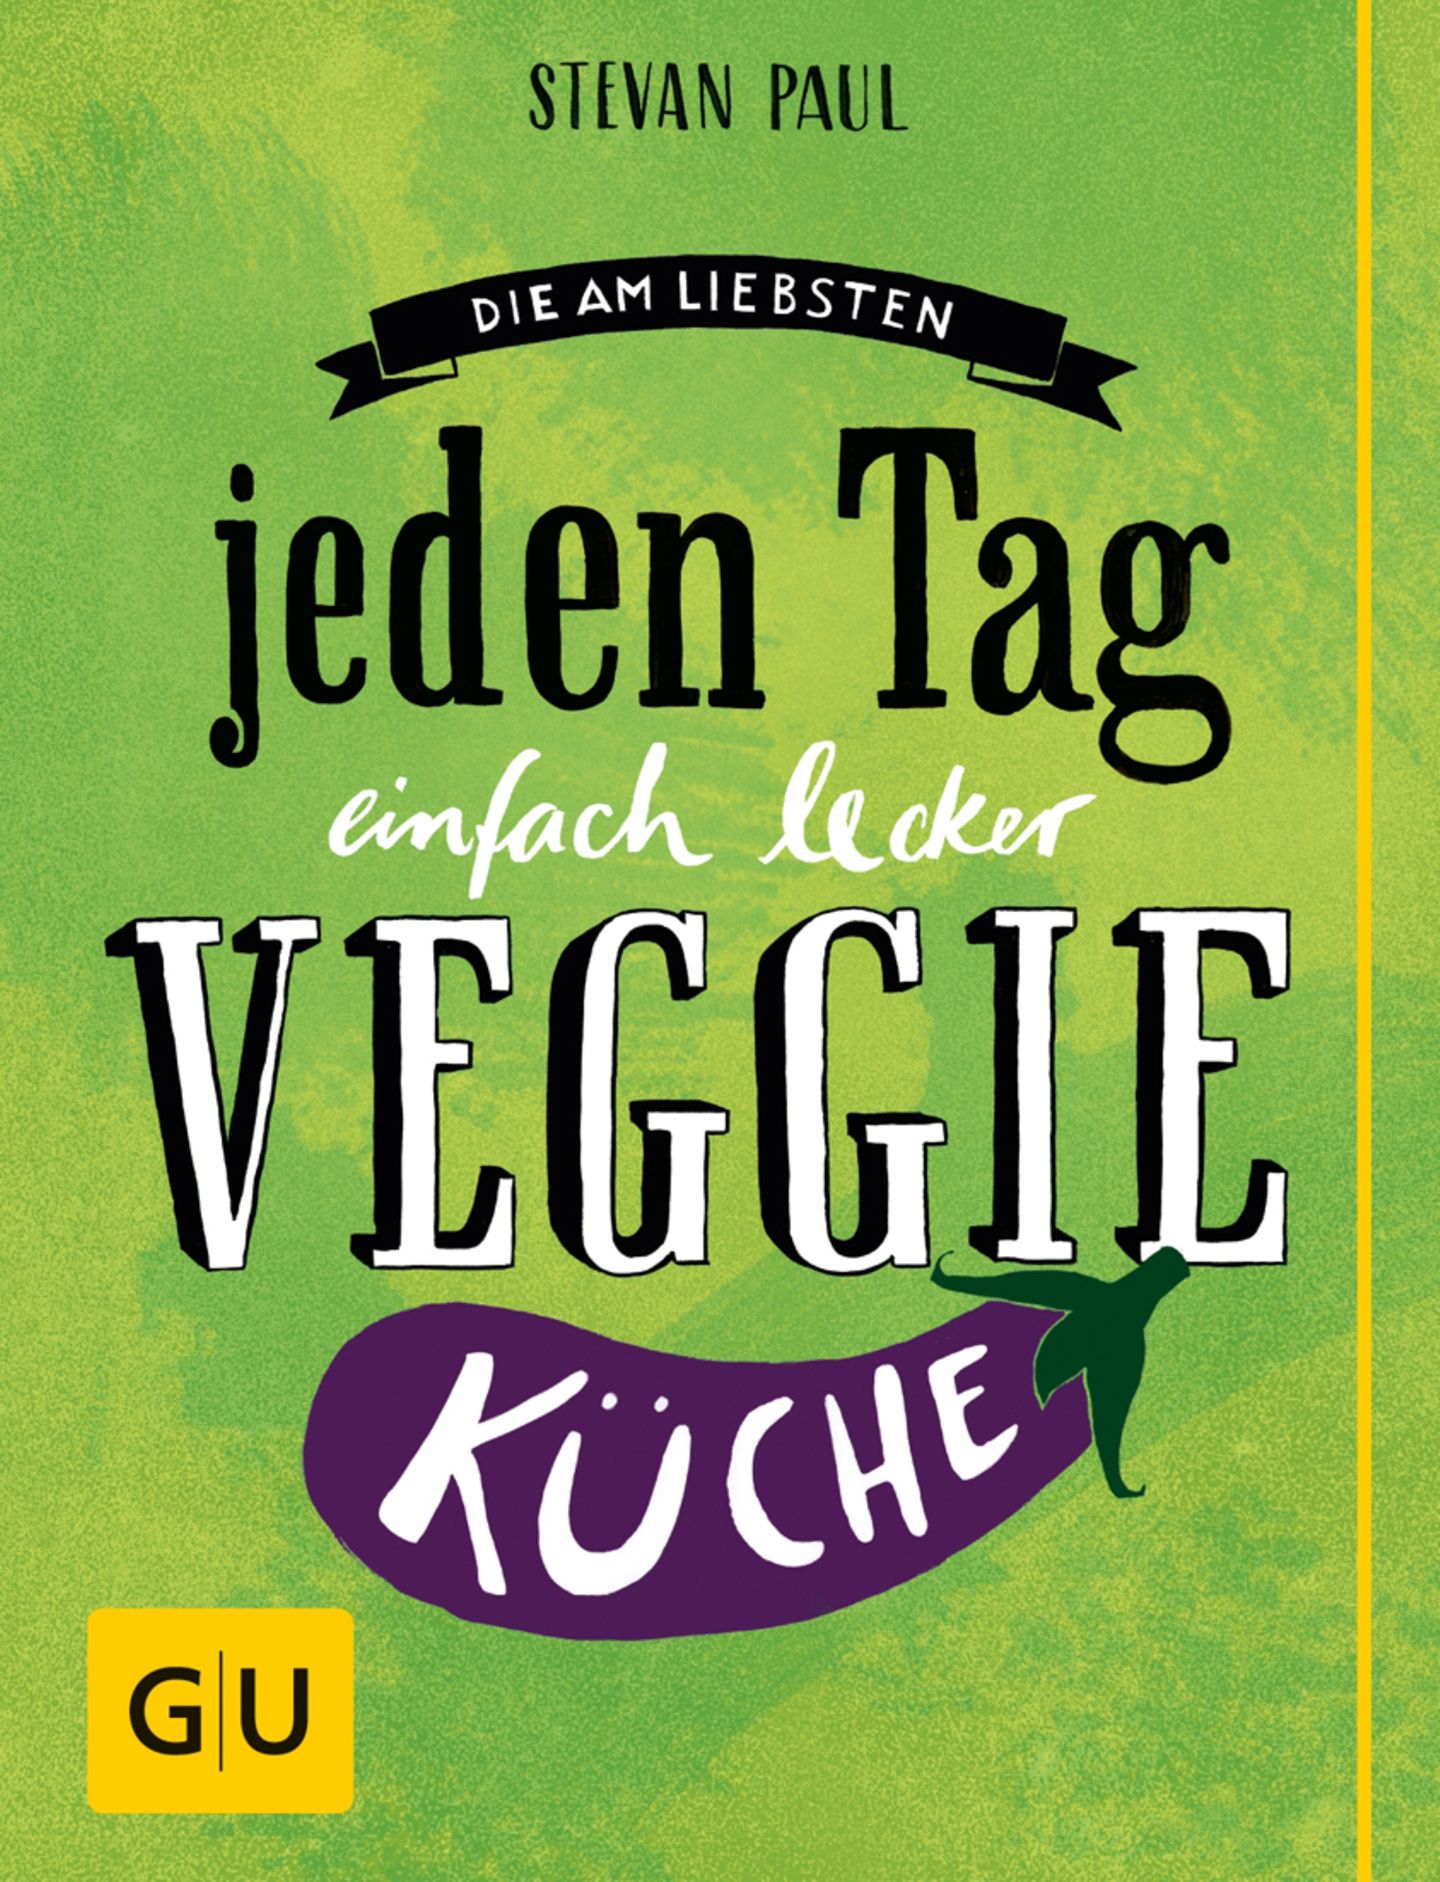 Kochbuch "Die am liebsten jeden Tag einfach lecker Veggie-Küche"